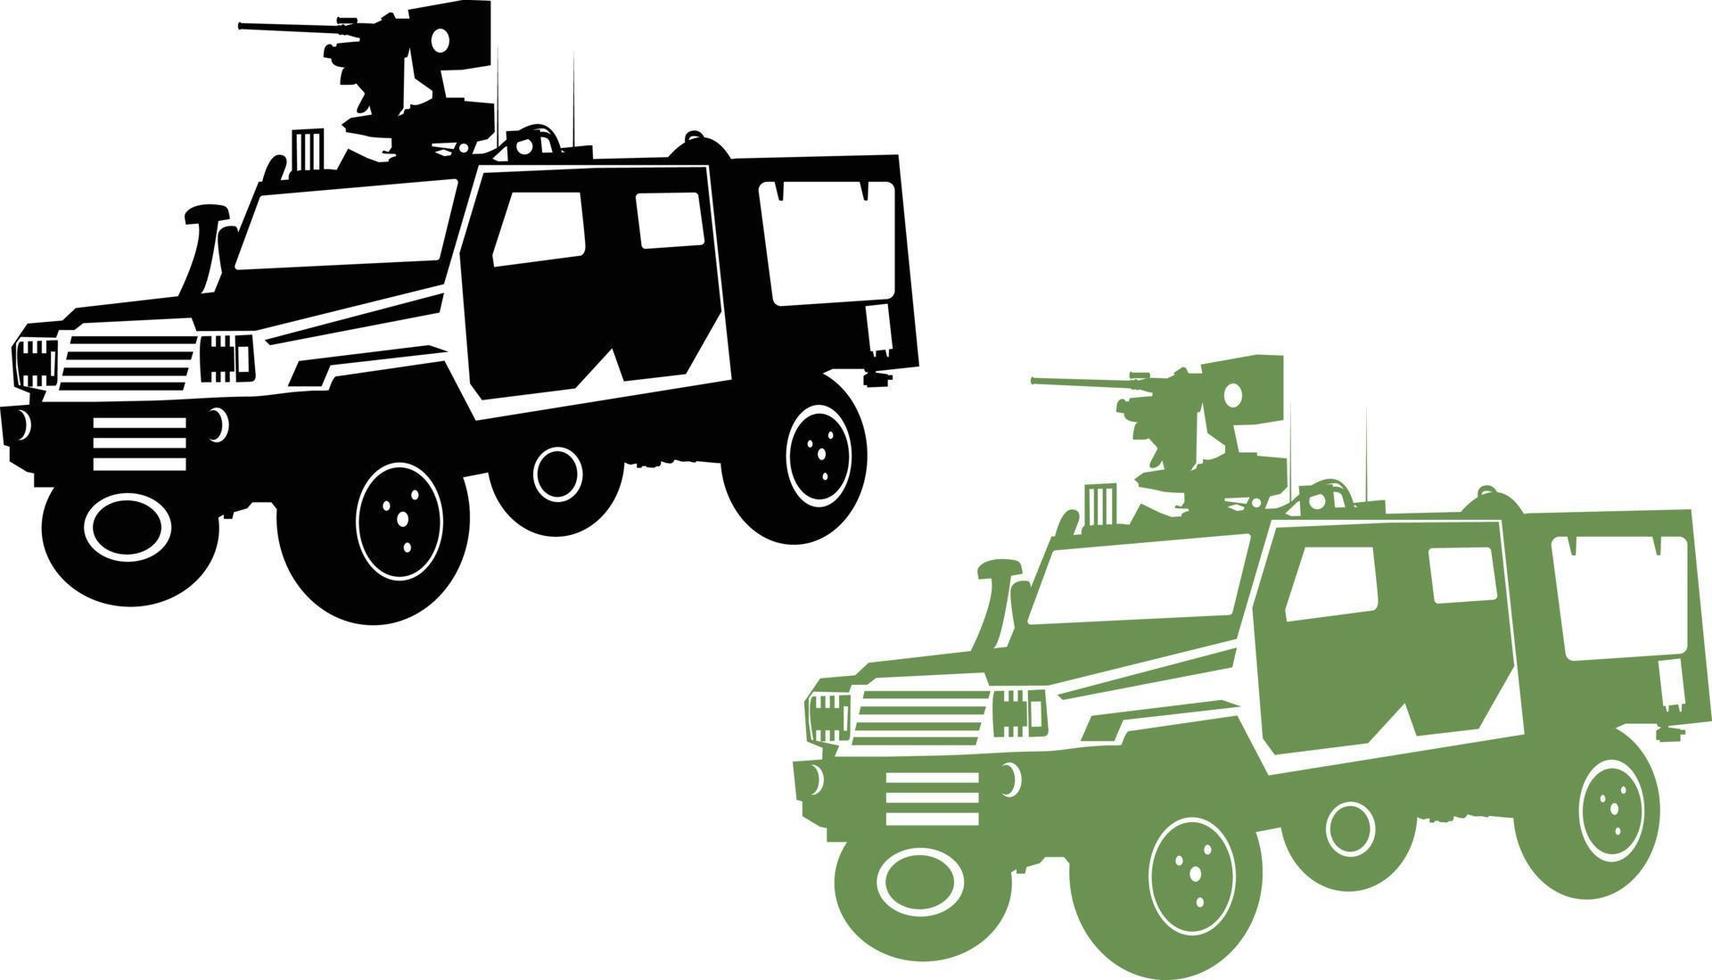 vehículo militar, jeep de camión todoterreno del ejército, vector de outrider rg, vector de automóviles de automóviles